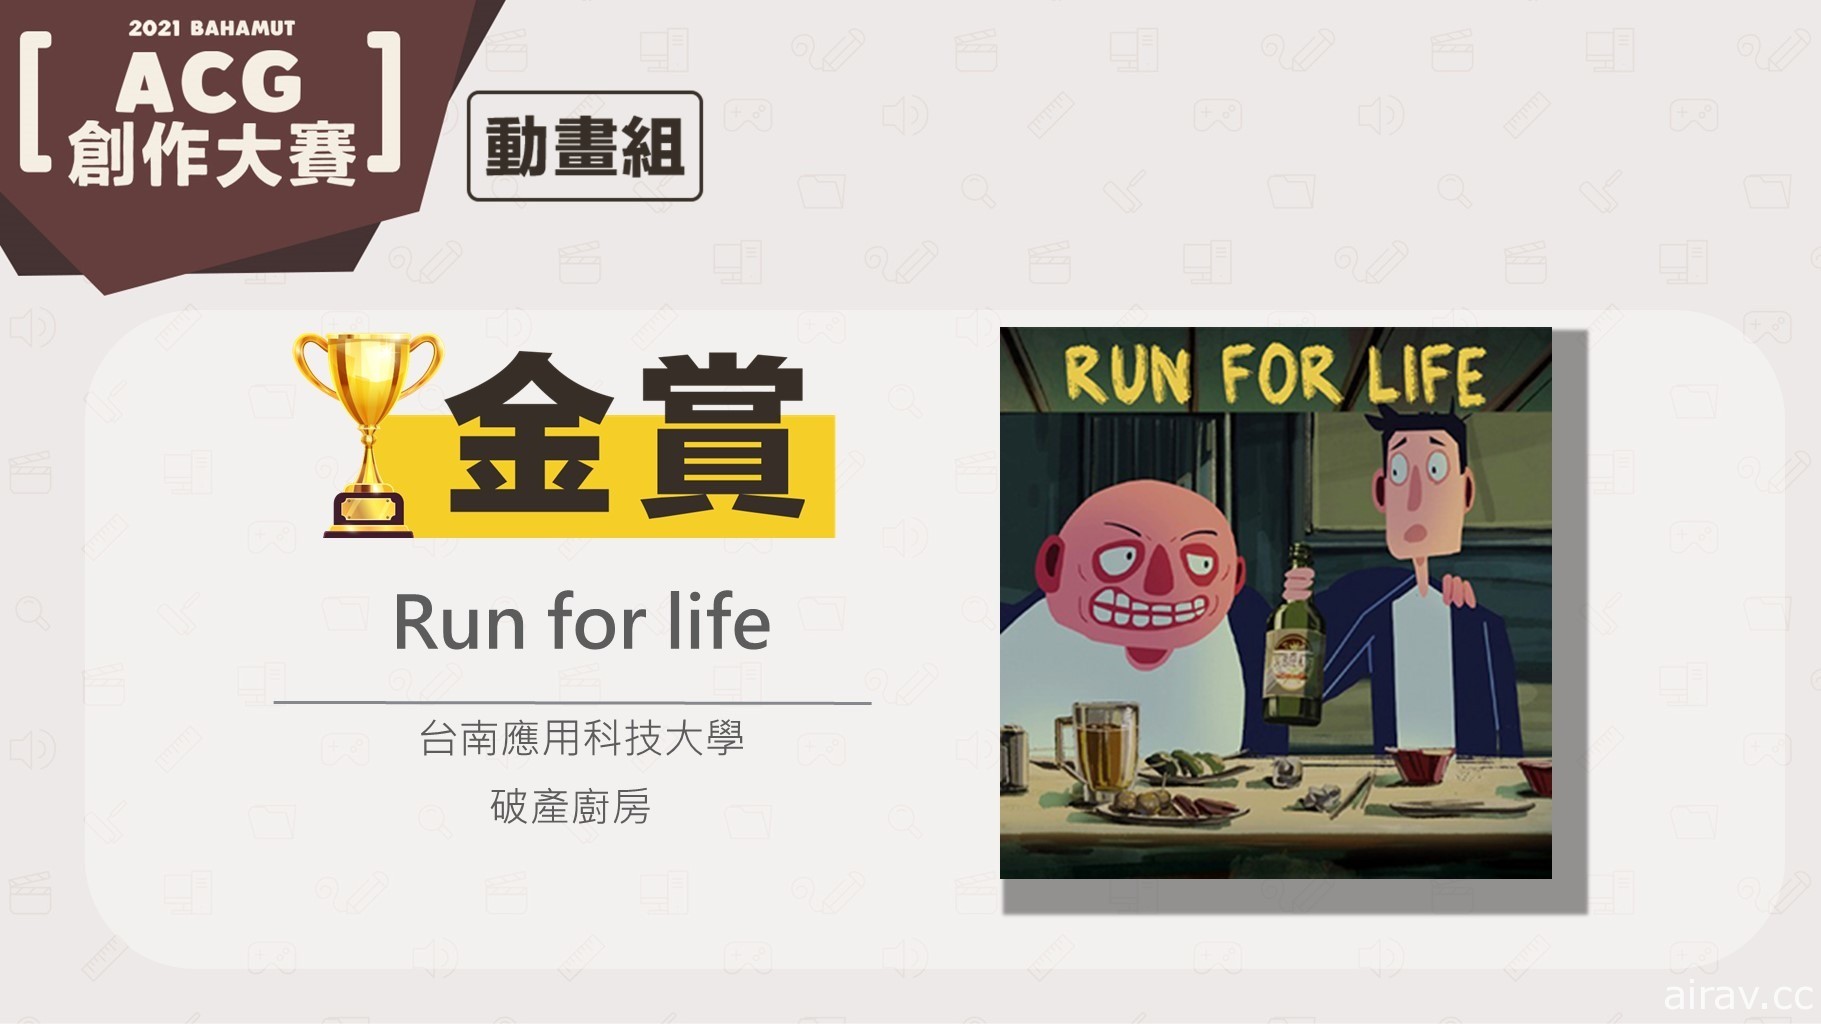 巴哈姆特 2021 ACG 創作大賽「動畫組」得獎揭曉 《Run for life》奪金賞